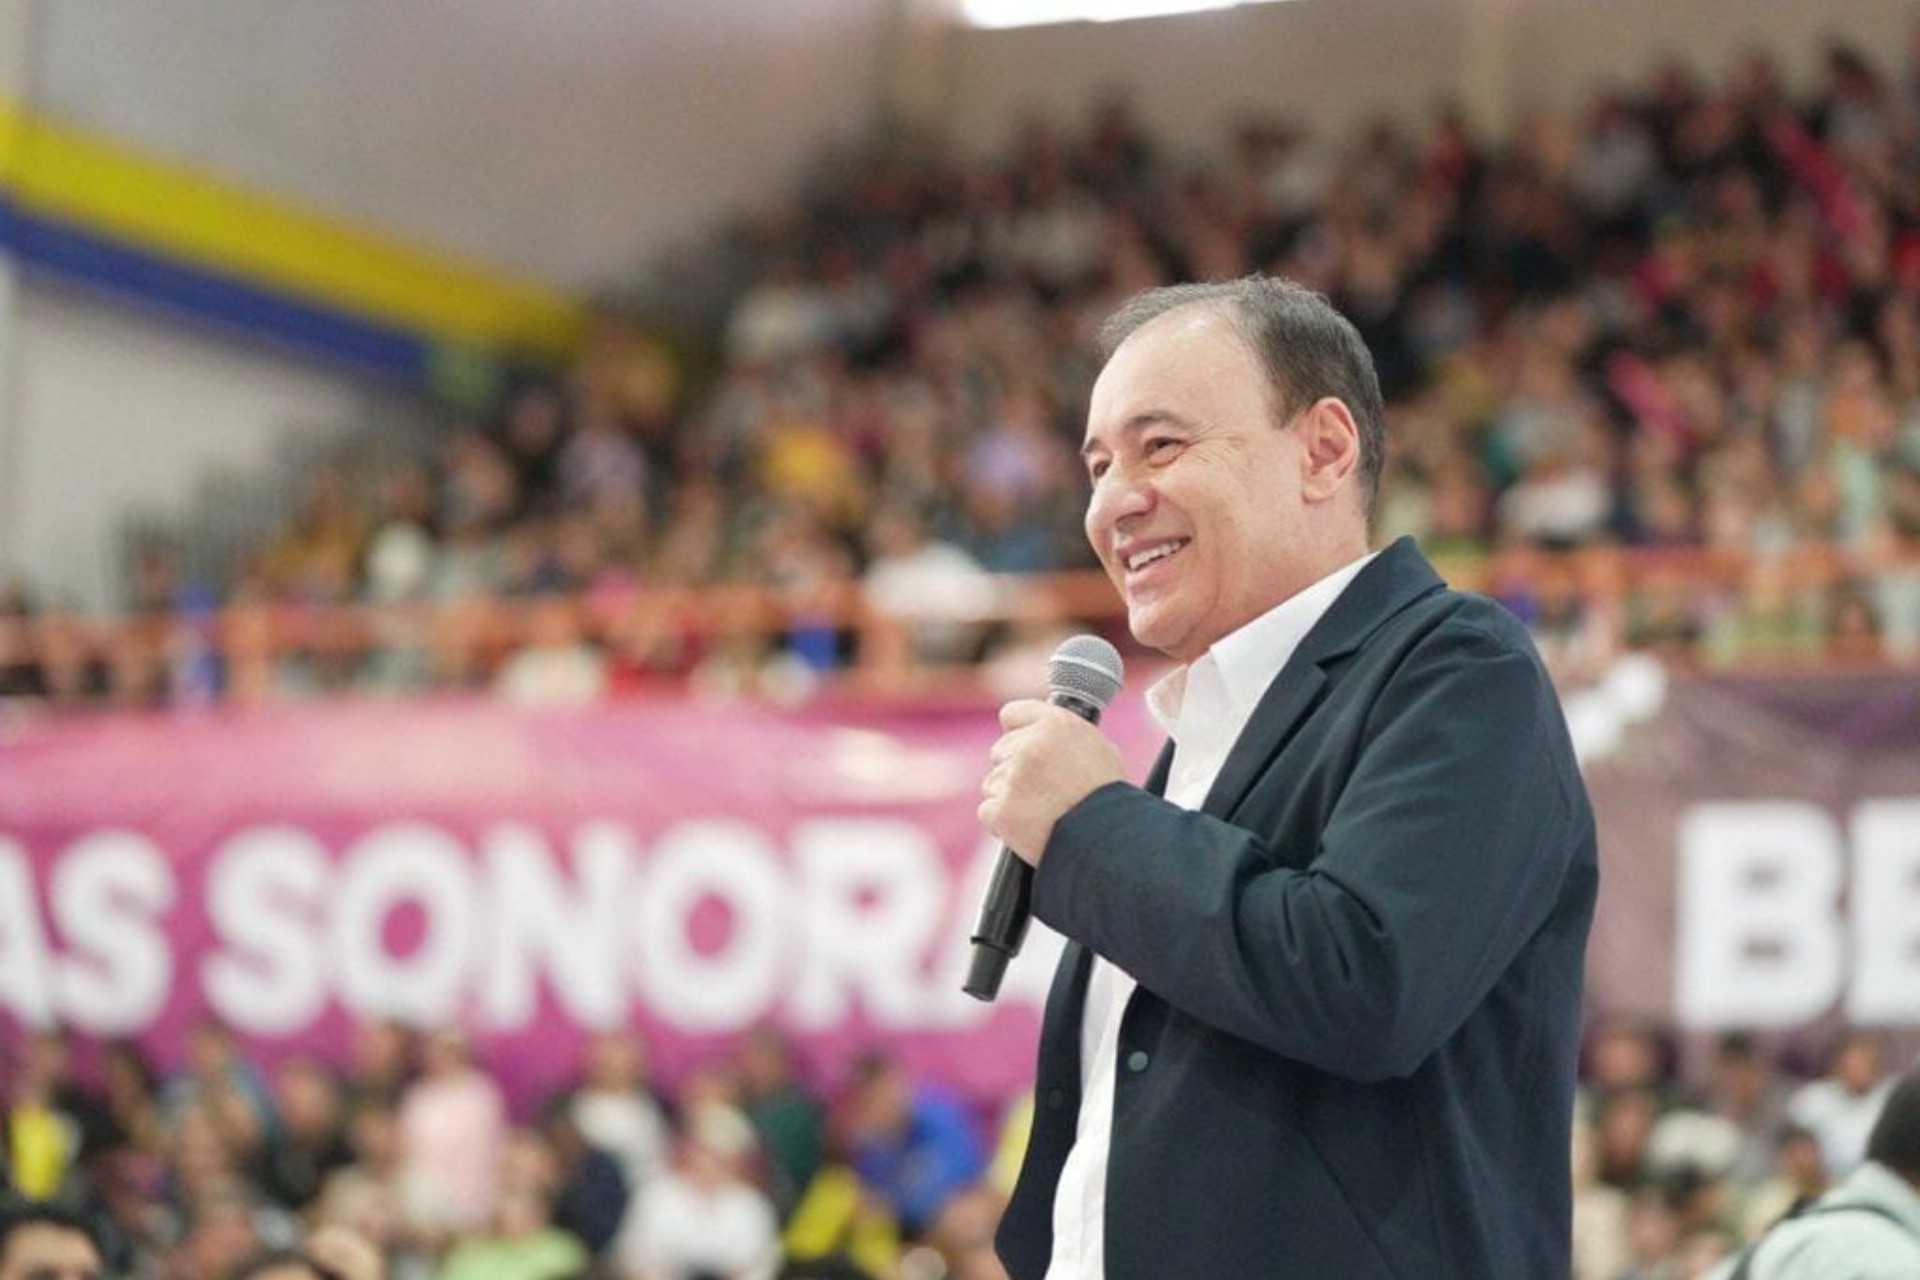 “Alfonso Durazo hace muy buen trabajo”: AMLO respalda al gobernador de Sonora pese a crisis de violencia